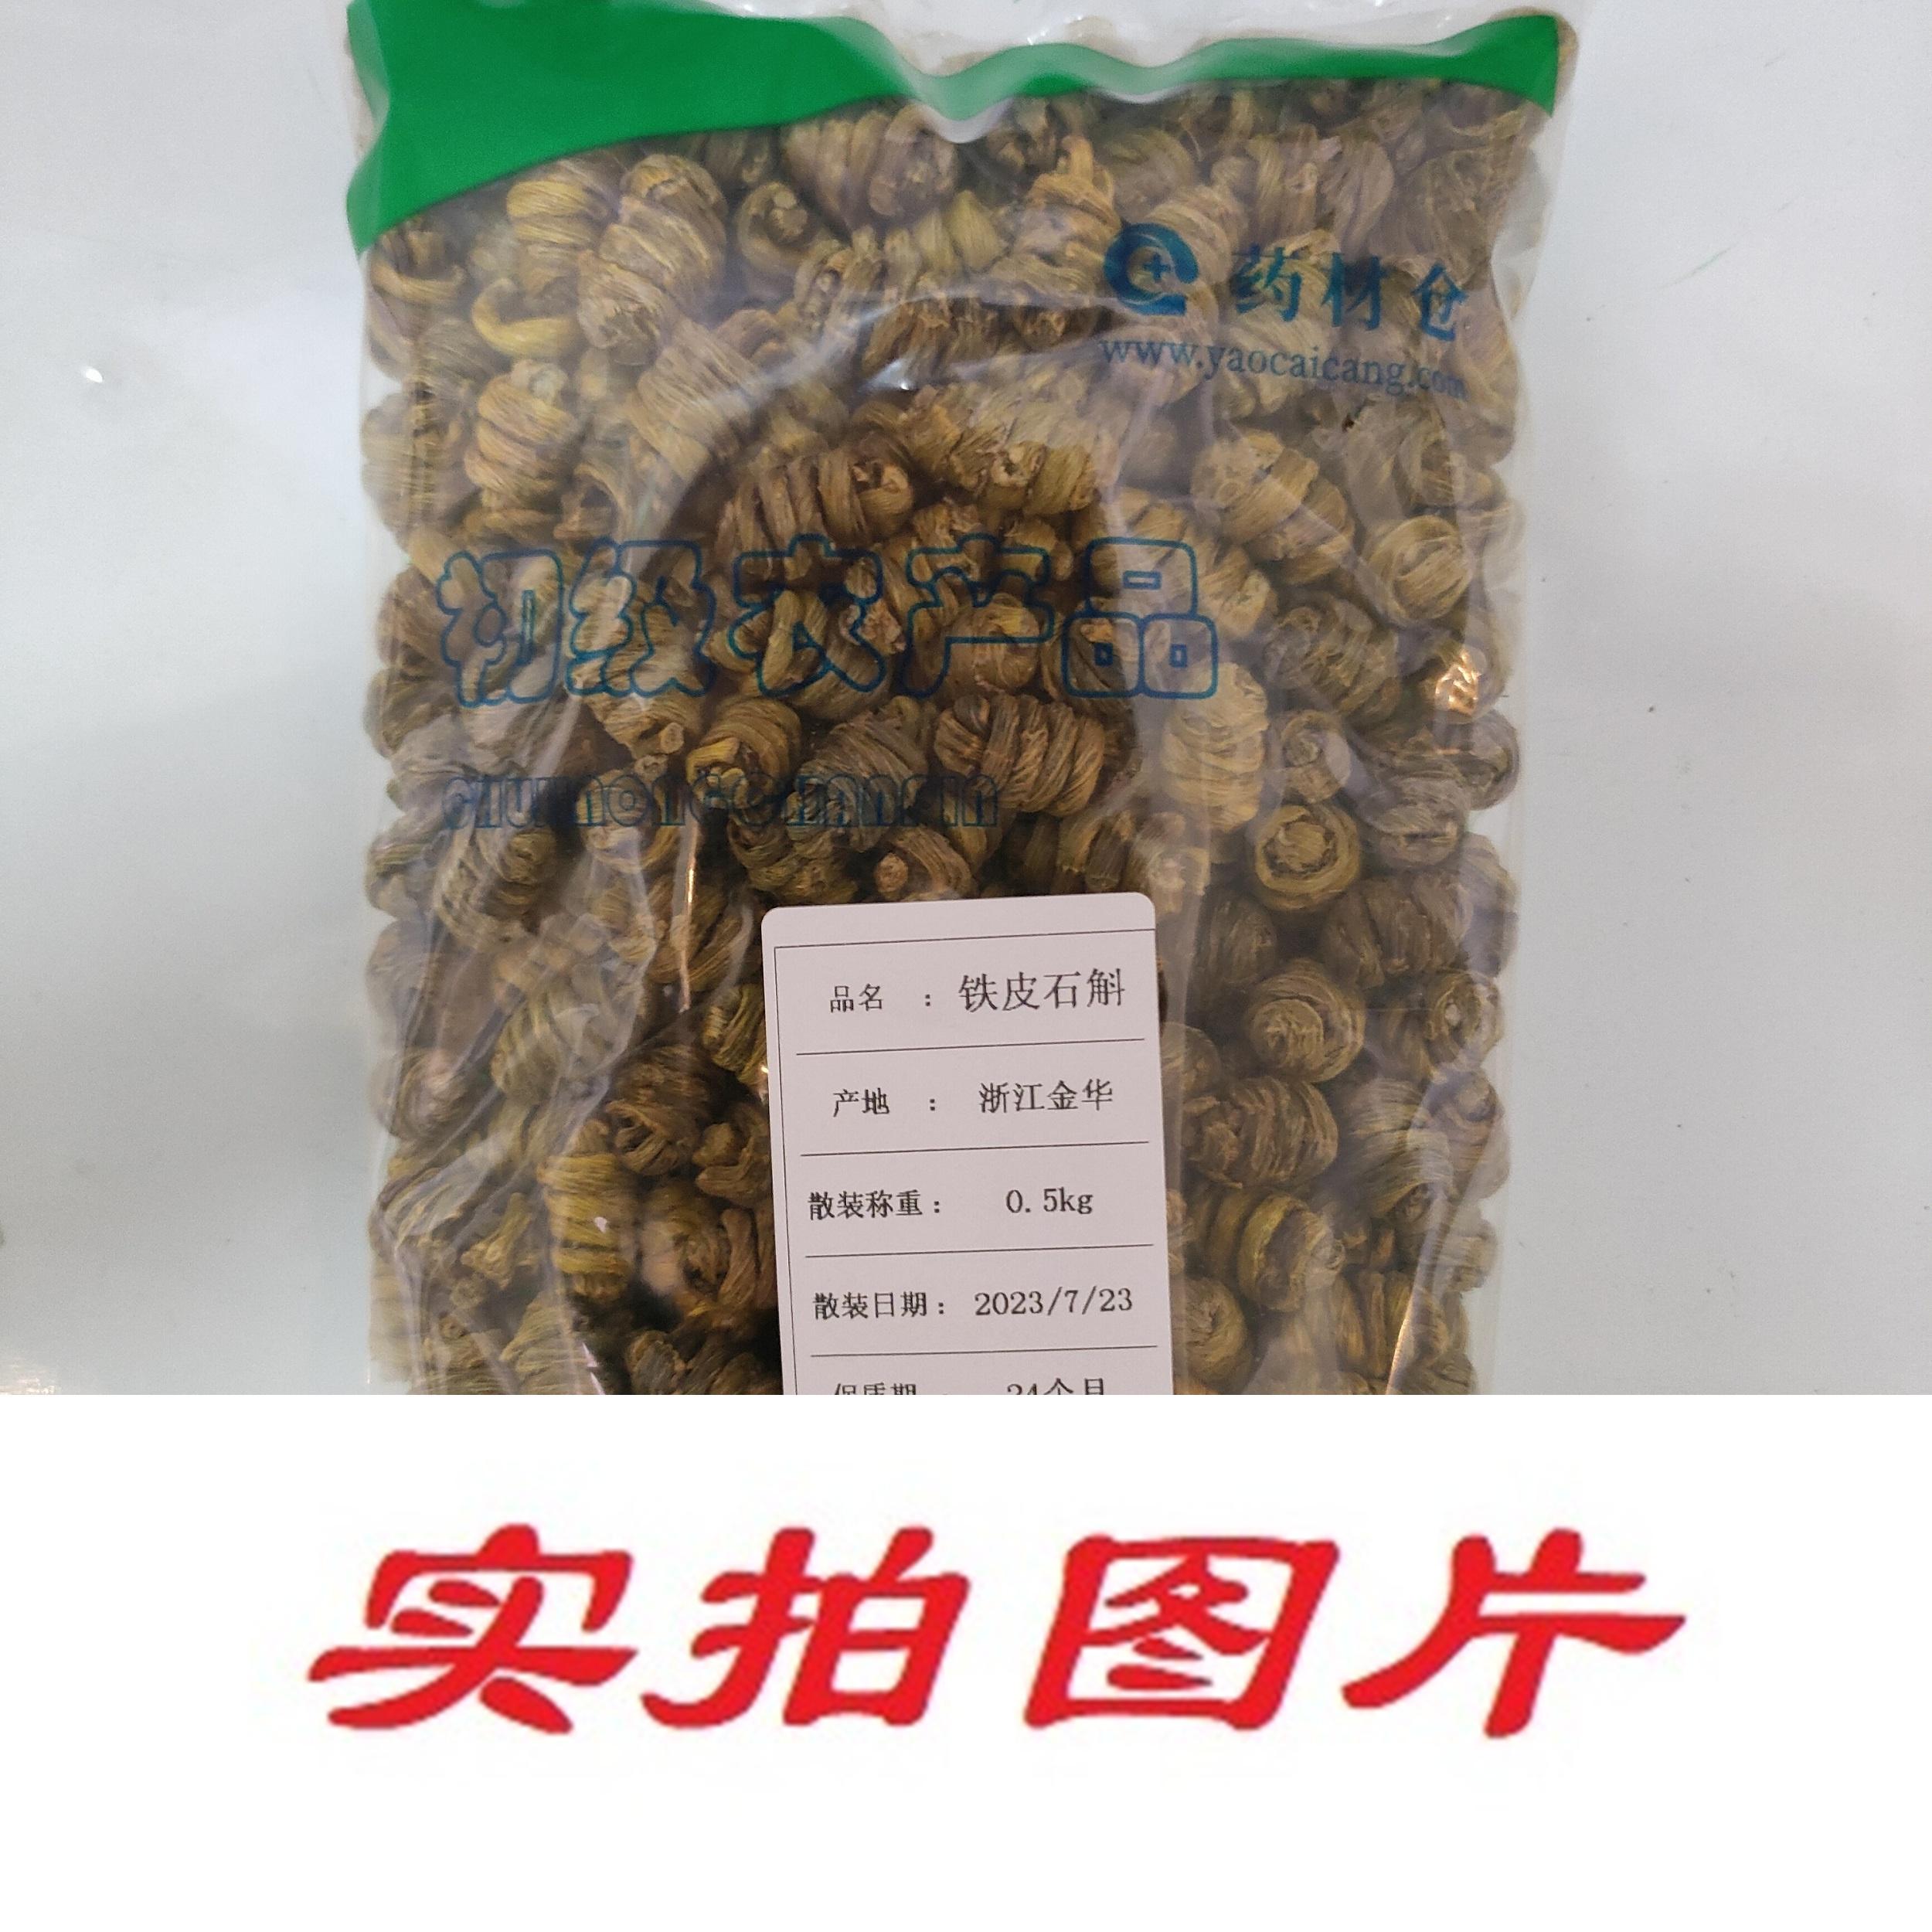 【】铁皮石斛0.5kg-农副产品